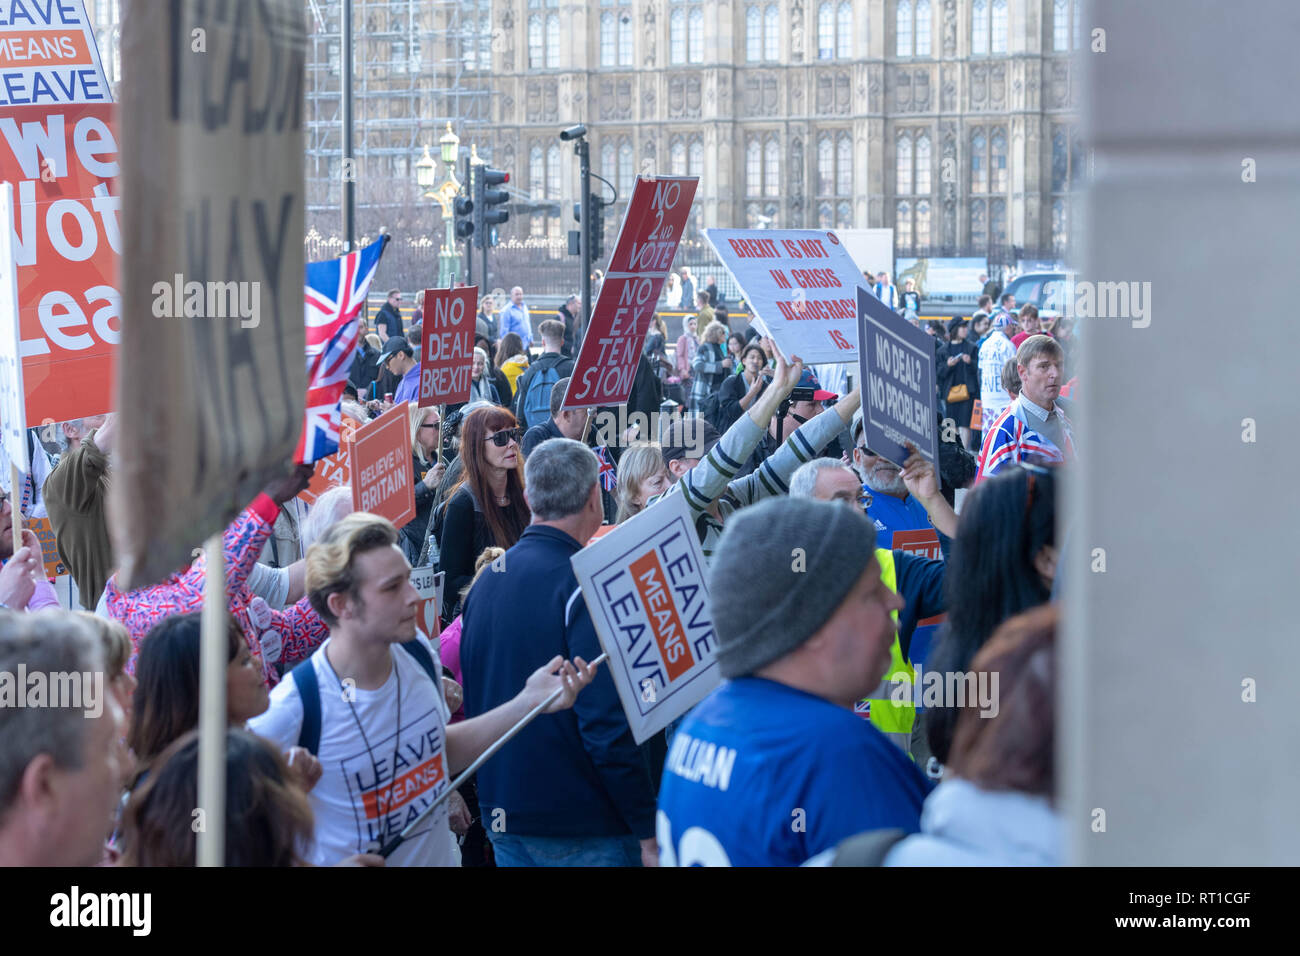 Londres 27 février 2019 manifestants pro et anti Brexit ont pris part à un certain nombre de rassemblements et marches courtes à divers endroits dans la région de Westminster Pro ousdie Brexit manifestants Portcullis House, qui contiennent les bureaux des députés Credit Ian Davidson/Alamy Live News Banque D'Images